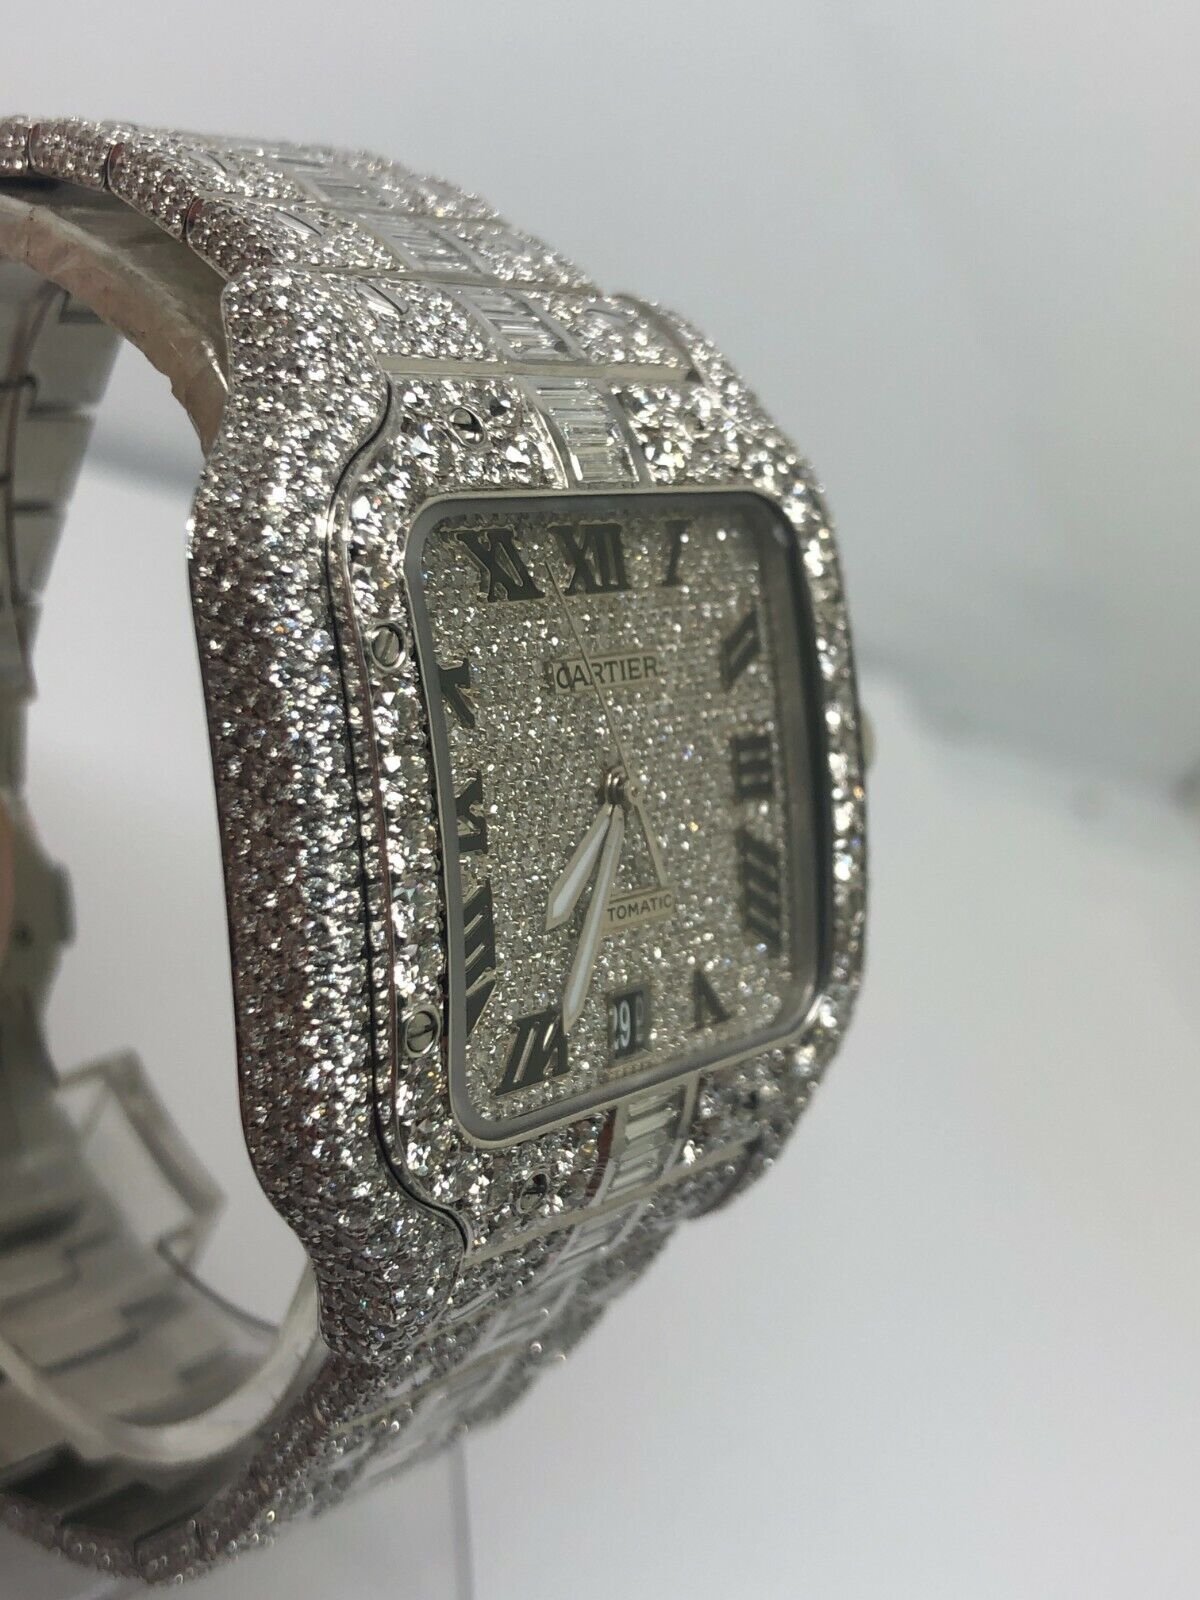 Cartier Santos WSSA0018 40mm Iced Out VVS Emerald Cut Diamond  Watch